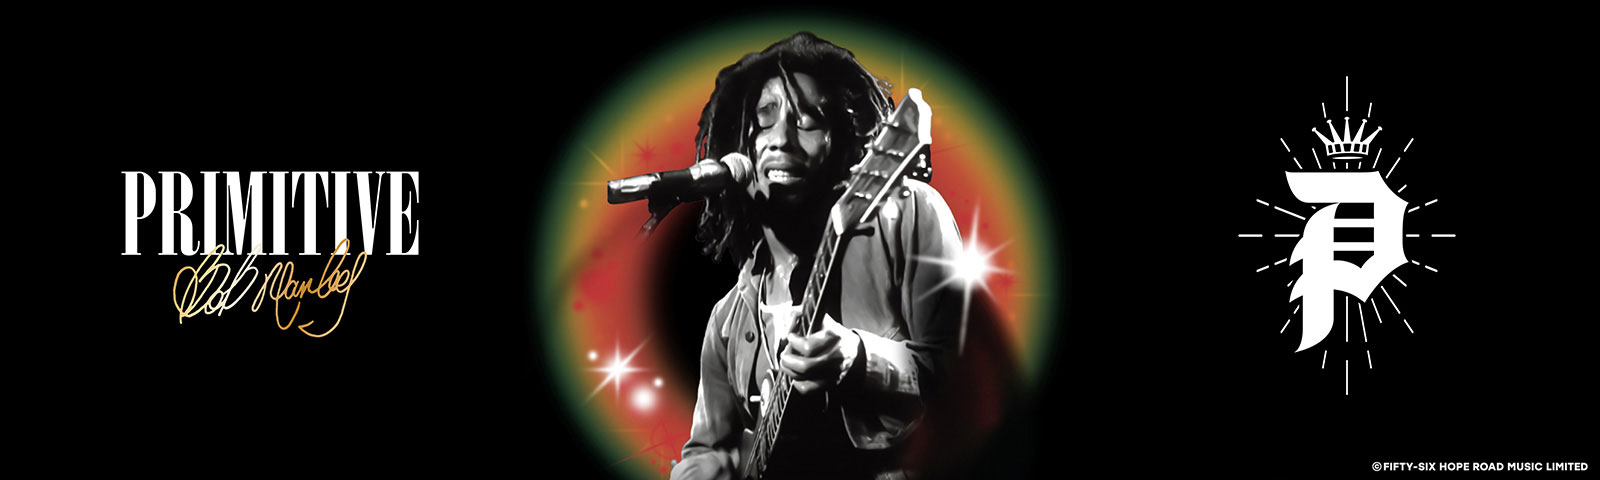 Primitive Bob Marley